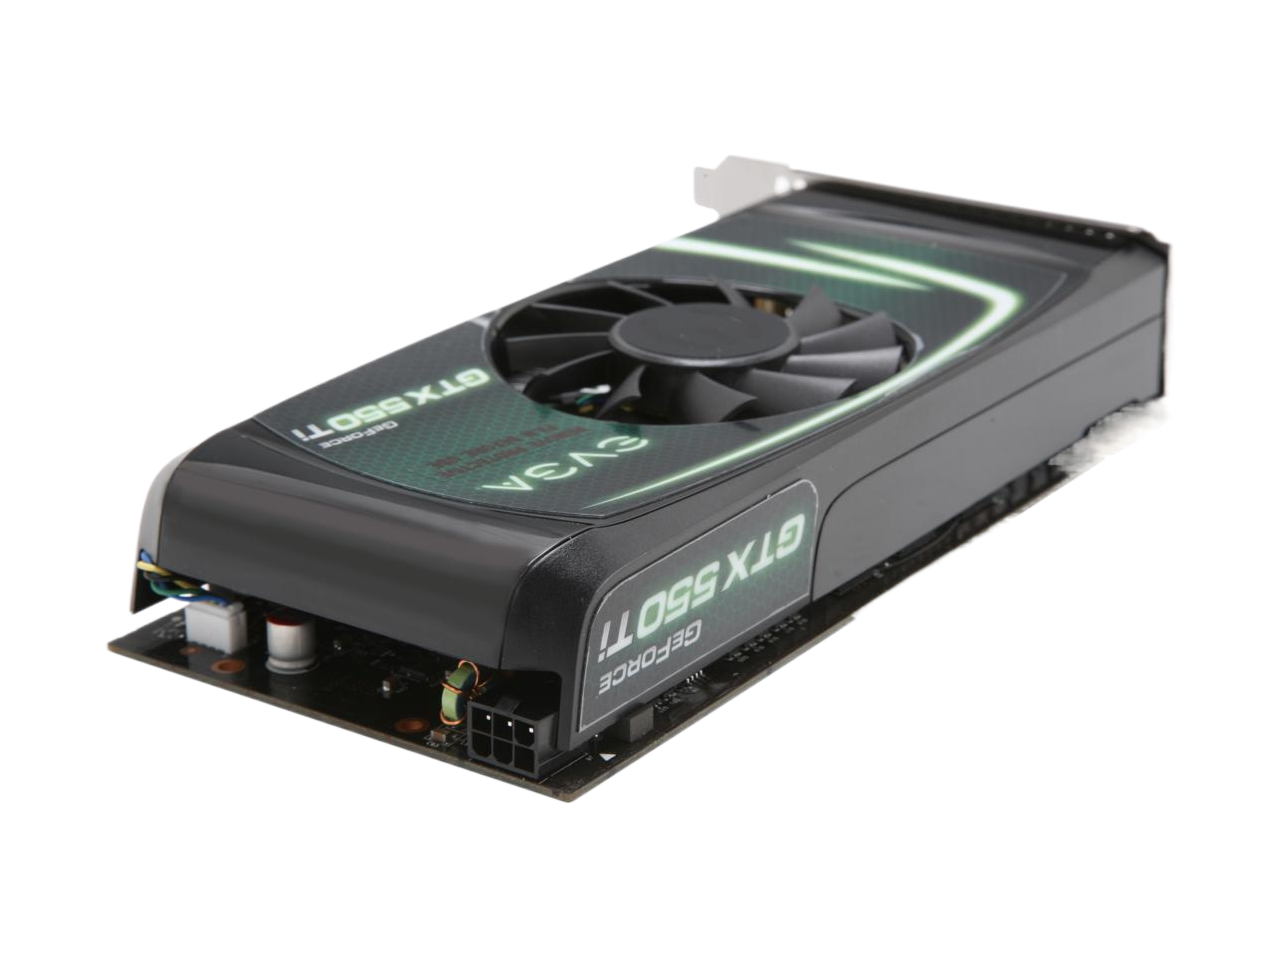 EVGA GeForce GTX 550 Ti 2GB GDDR5 PCI Express 2.0 x16 SLI Support Video Card 02G-P3-1559-KR